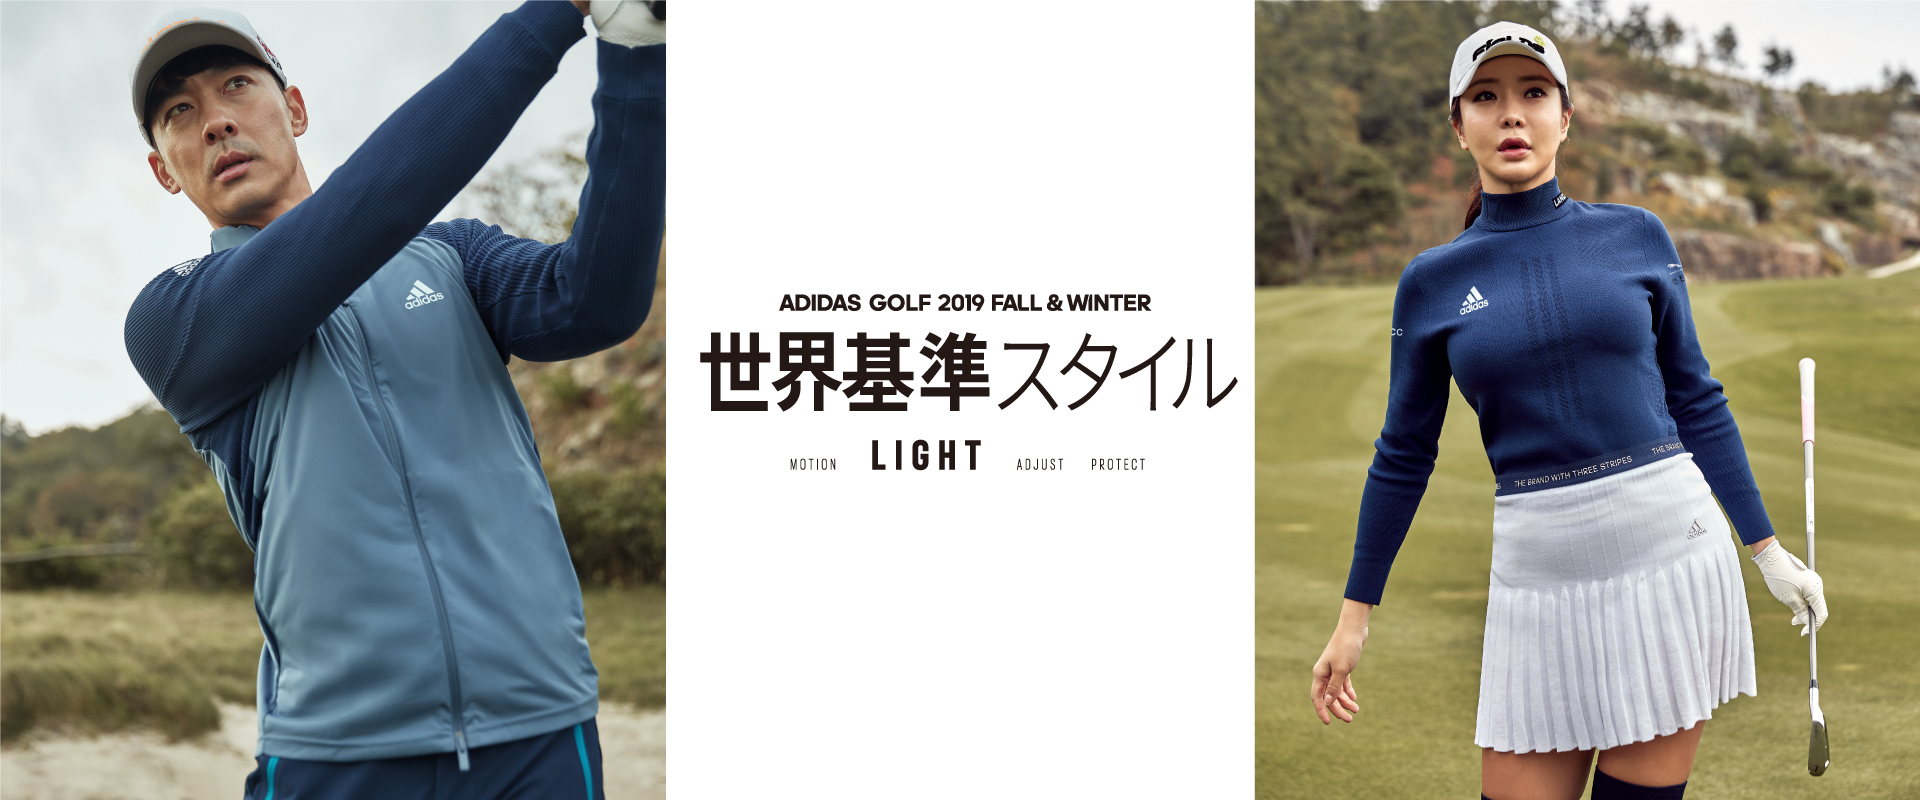 アディダスゴルフ、2019 Fall / Winter Apparel Collectionを発表 ...